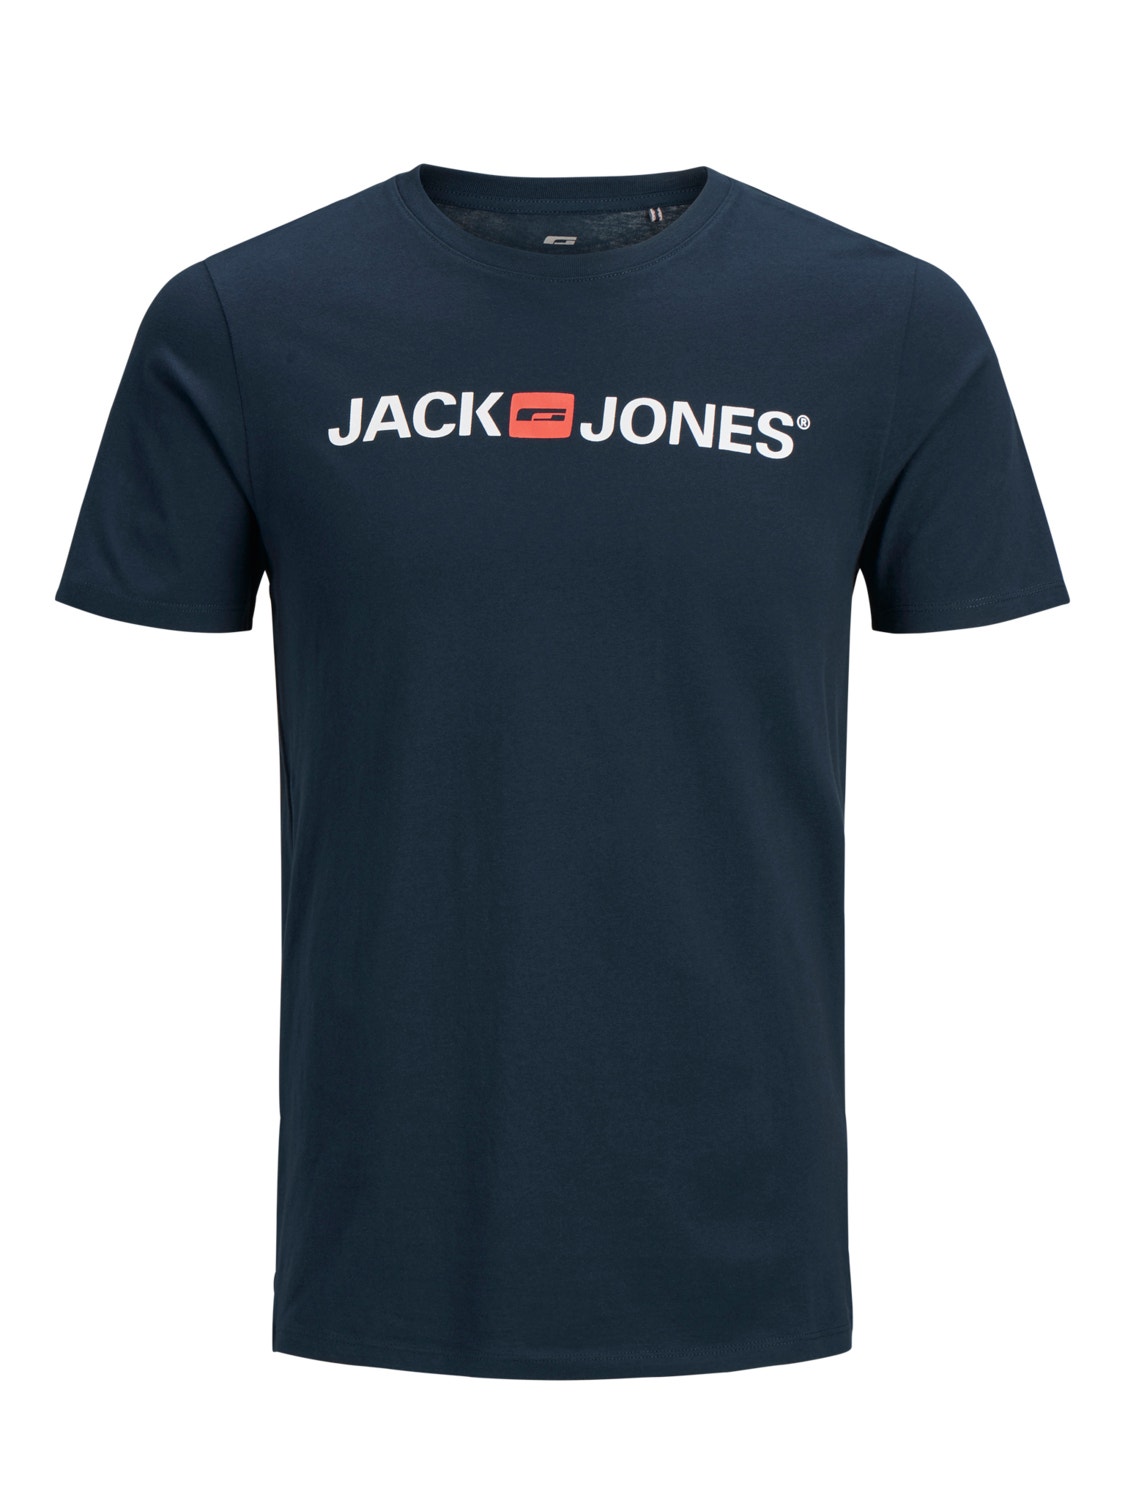 Jack & Jones Plus Logo Tričko -Navy Blazer - 12184987